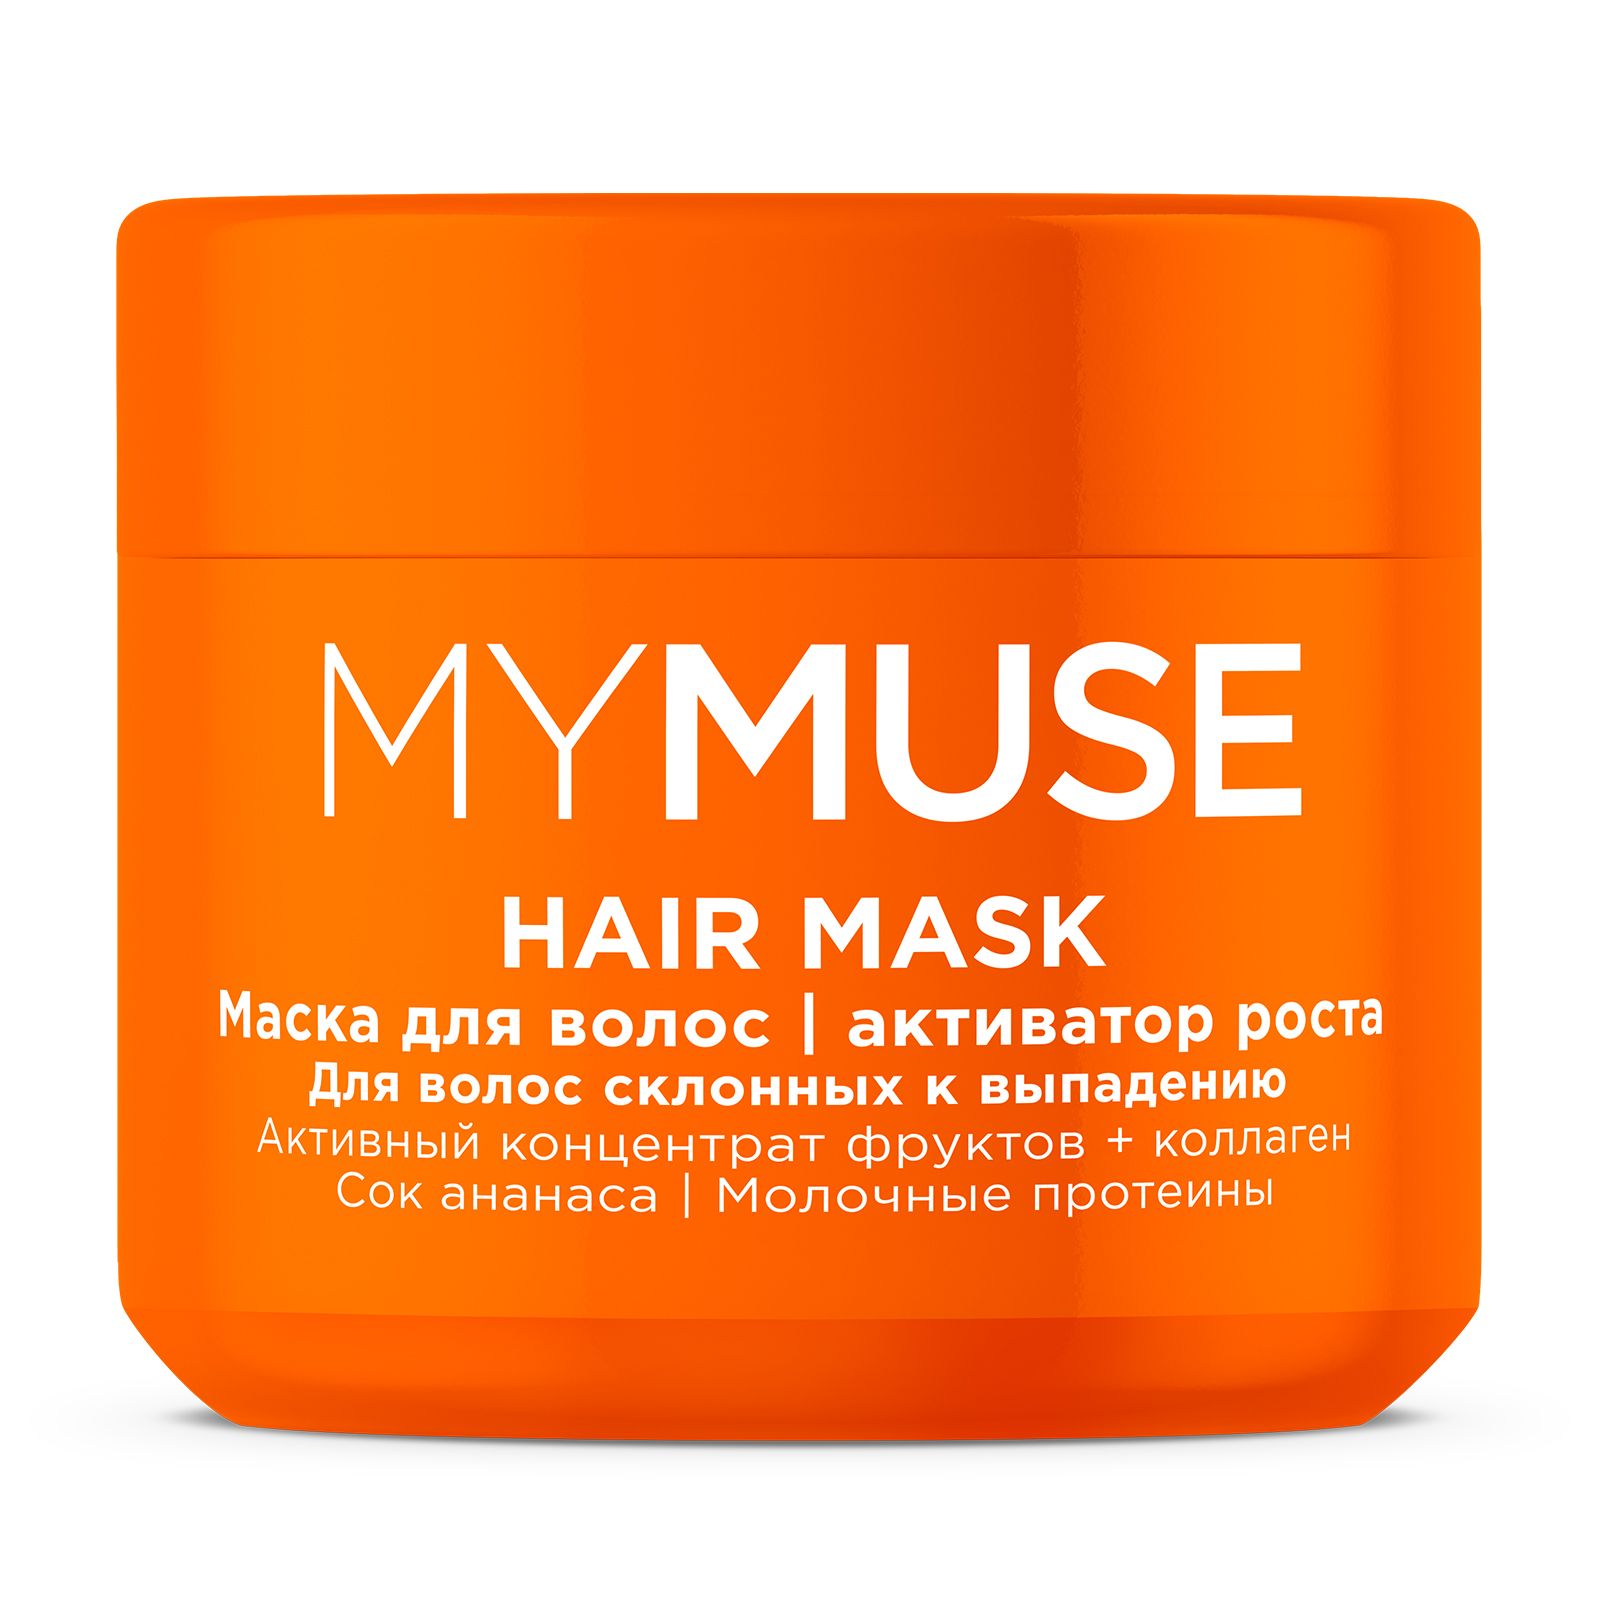 Маска для волос MYMUSE активатор роста 300 мл liv delano шампунь энергия роста для склонных к выпадению волос oriental touch 400 0